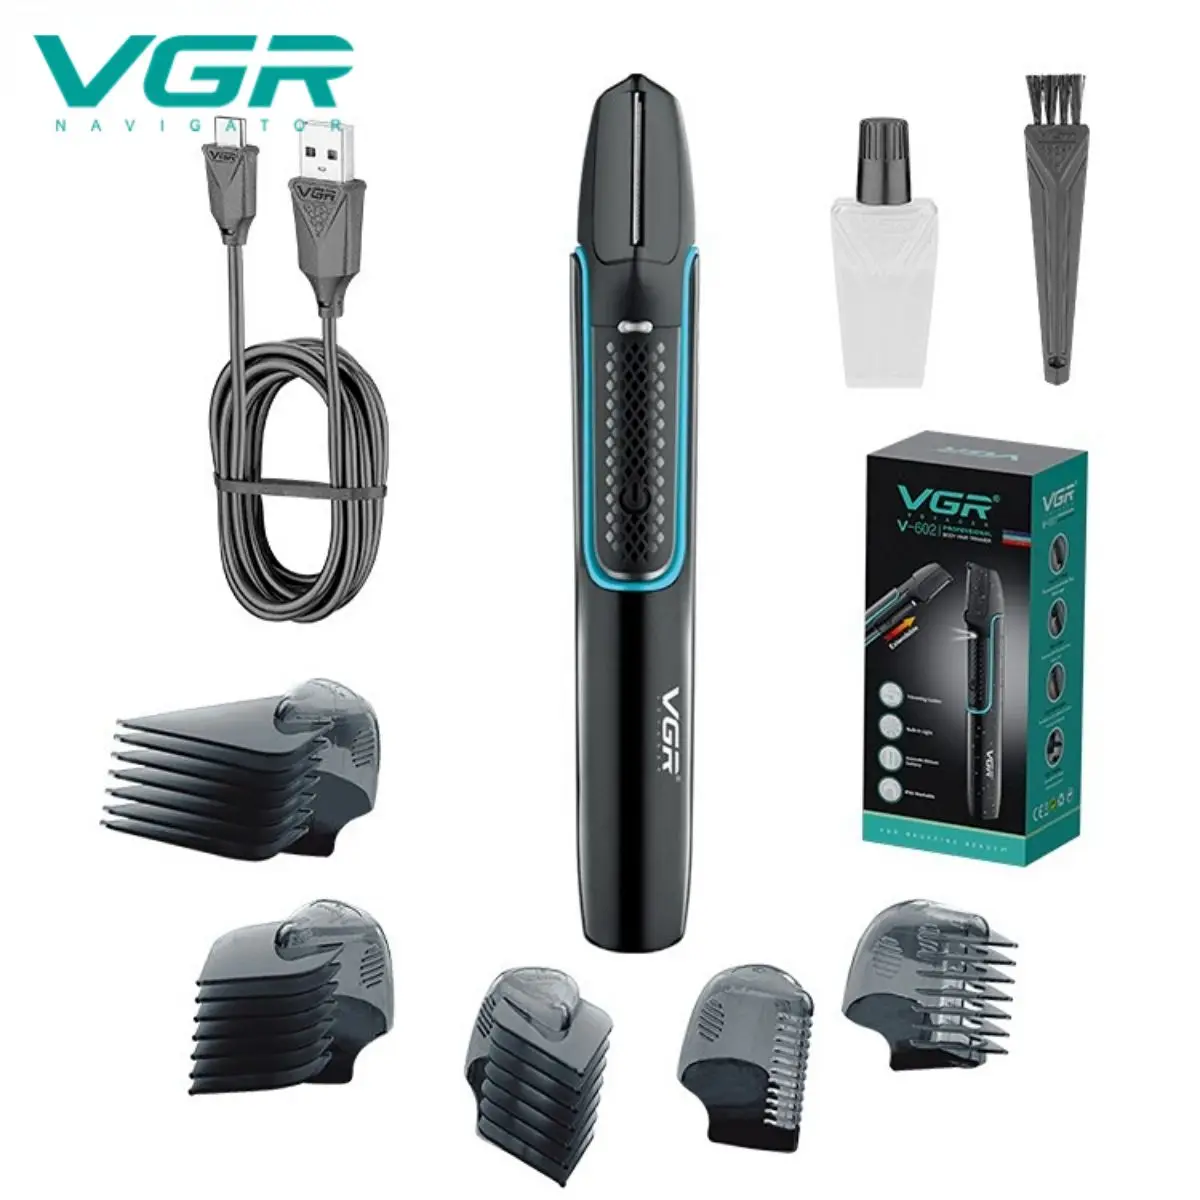 

VGR Триммер для волос Профессиональный Машинка для стрижки волос Электрический Машина для нулевой резки Перезаряжаемый IPX6 Водонепроницаемый Триммер для мужчин V-602